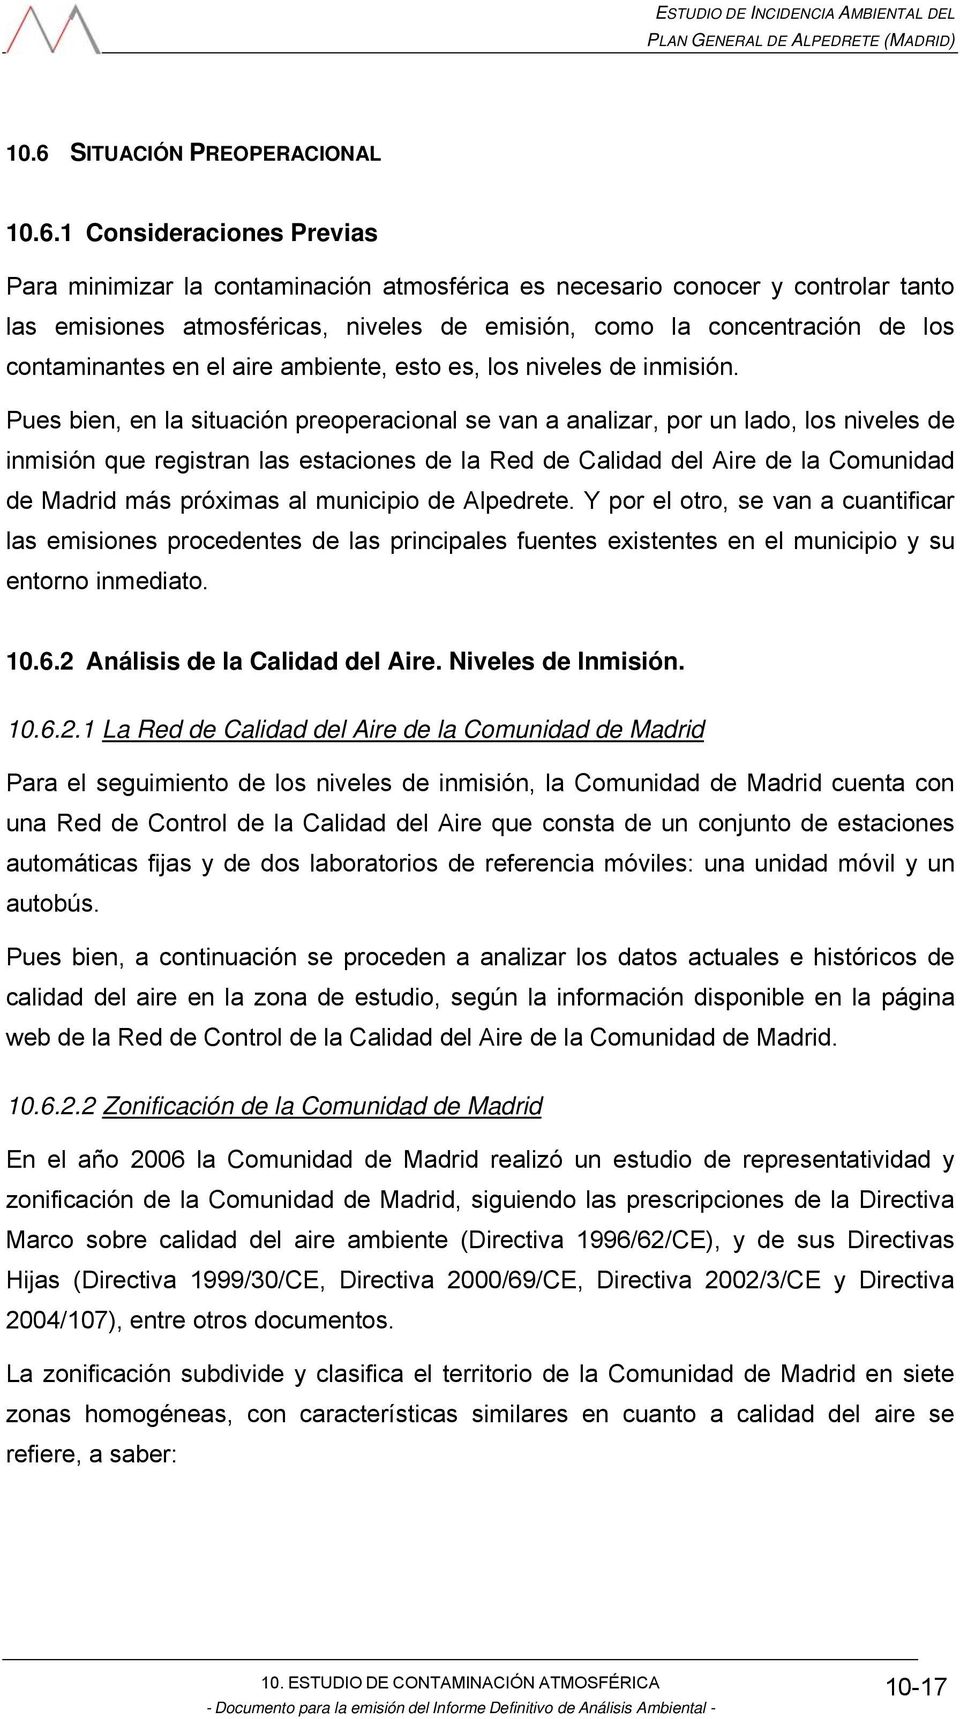 Pues bien, en la situación preoperacional se van a analizar, por un lado, los niveles de inmisión que registran las estaciones de la Red de Calidad del Aire de la Comunidad de Madrid más próximas al